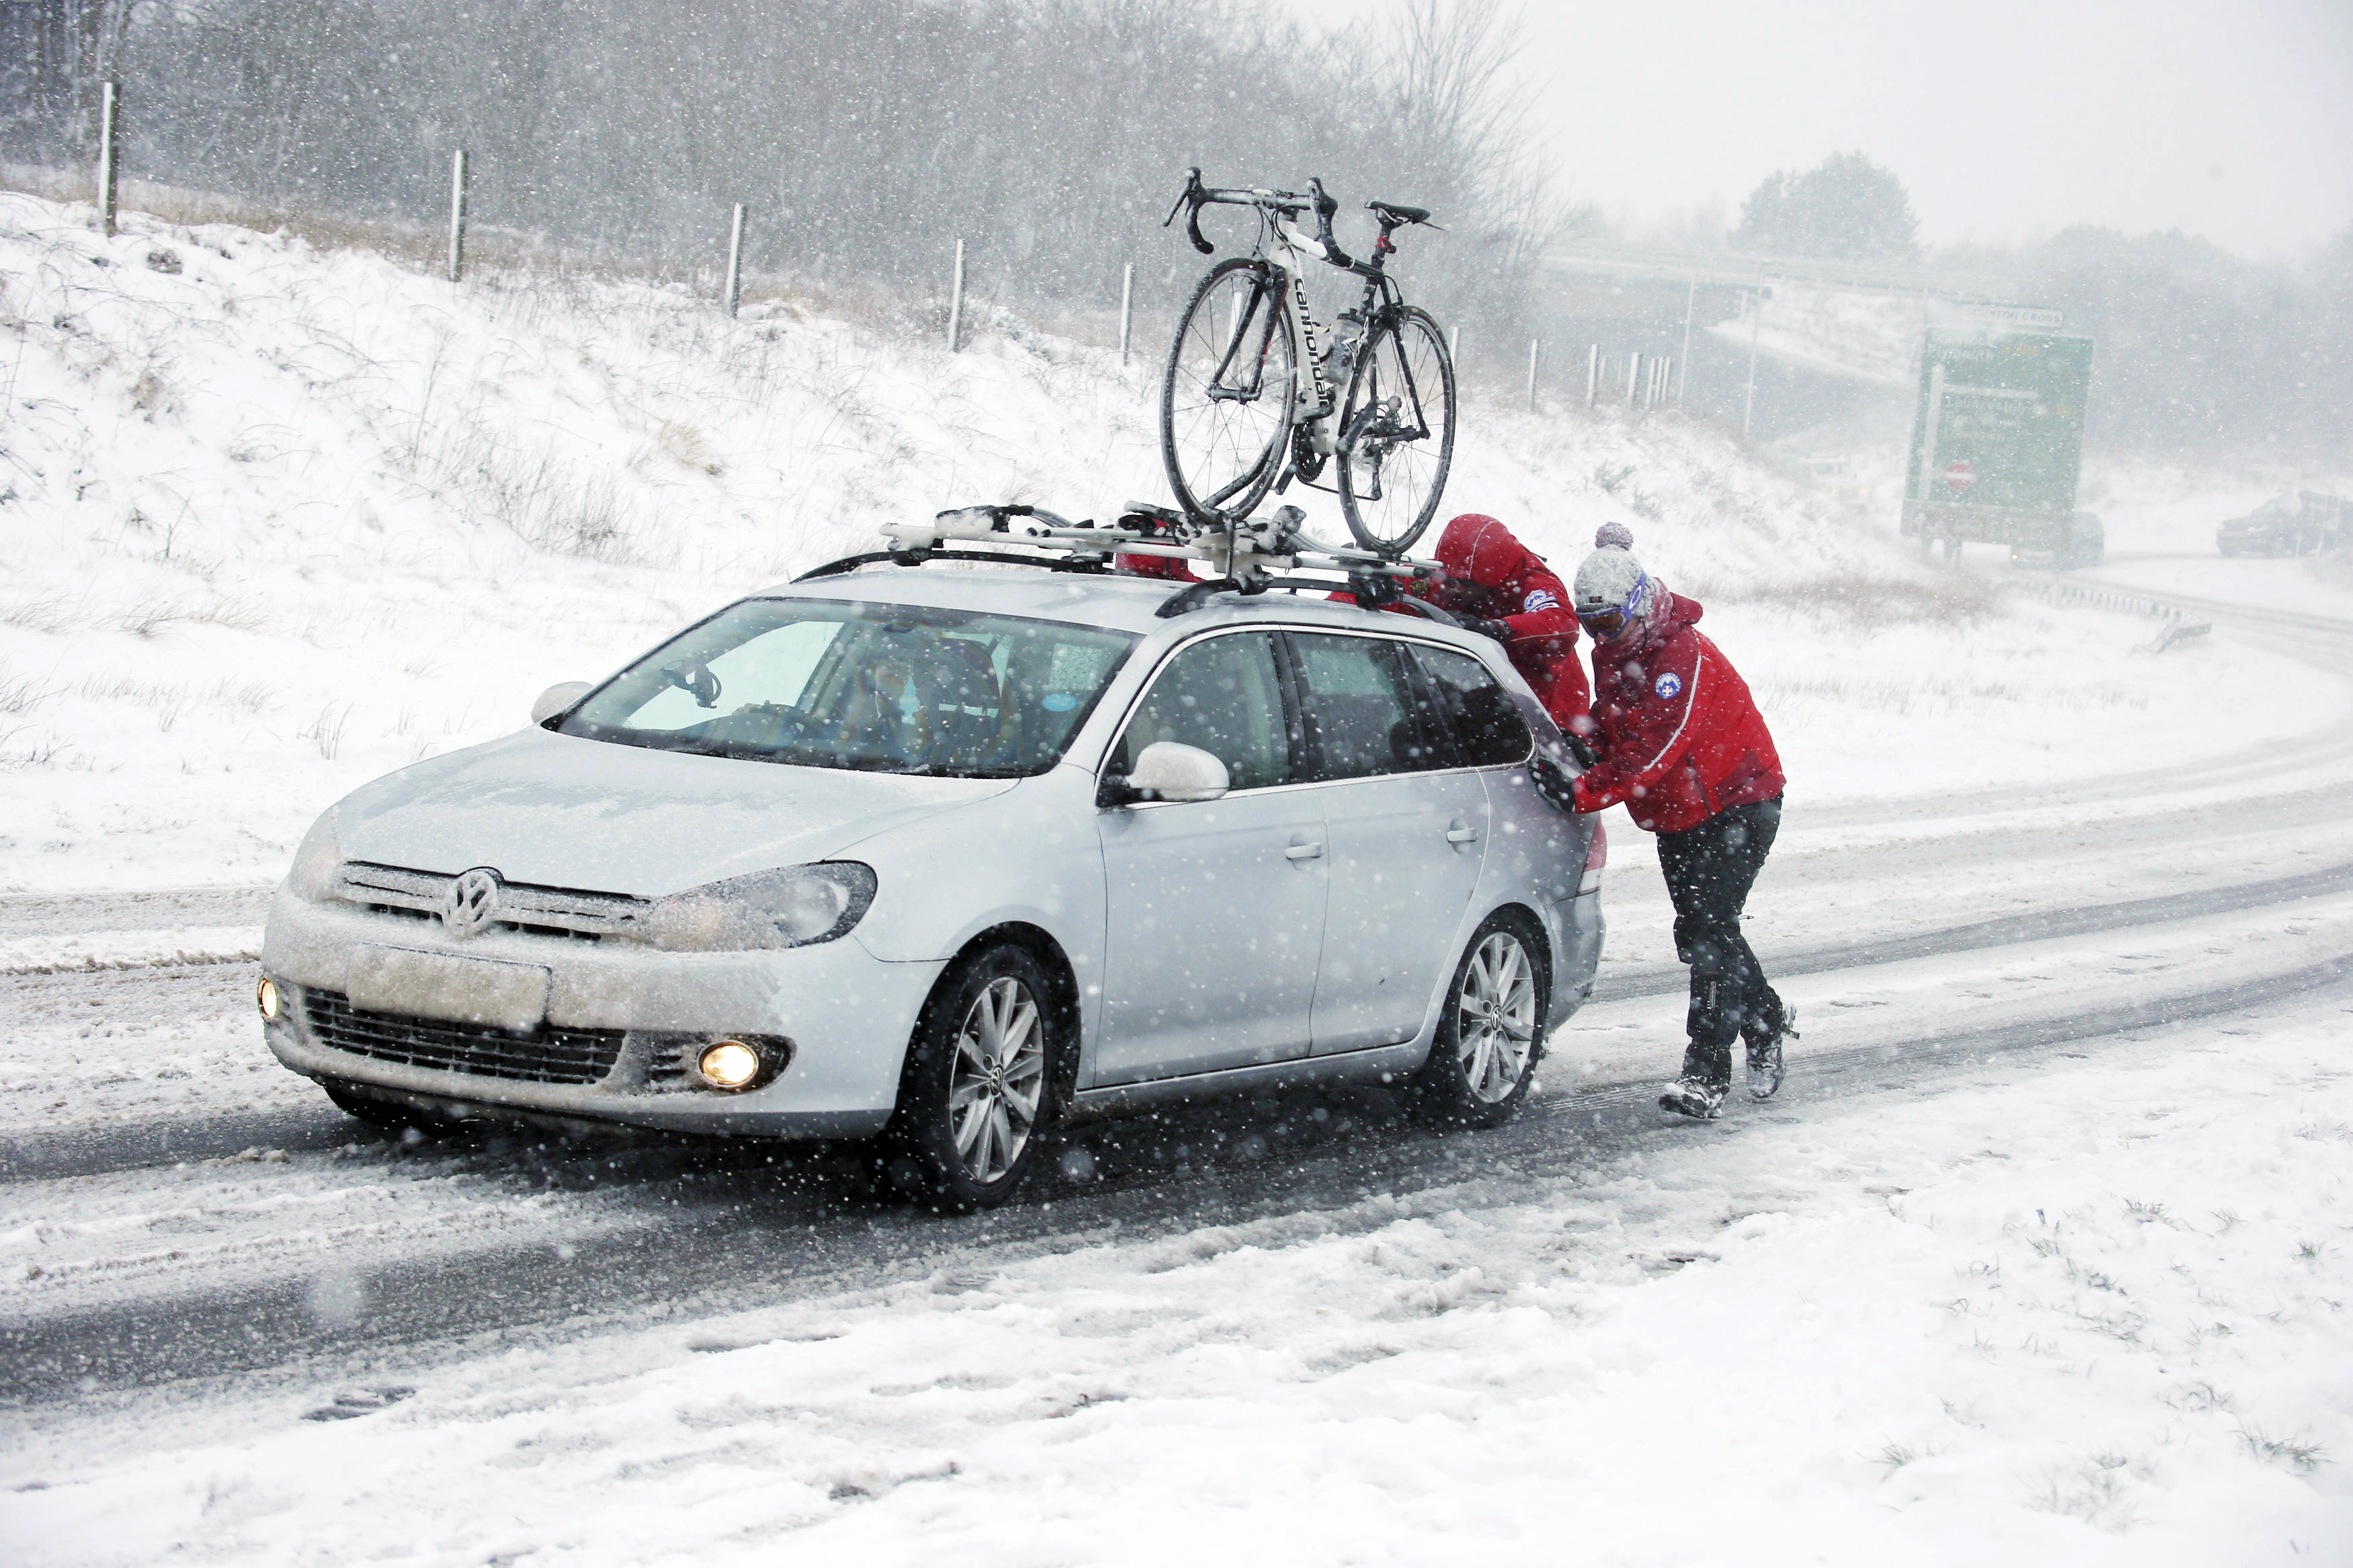 Във Великобритания обилен сняг причини хаос по пътищата